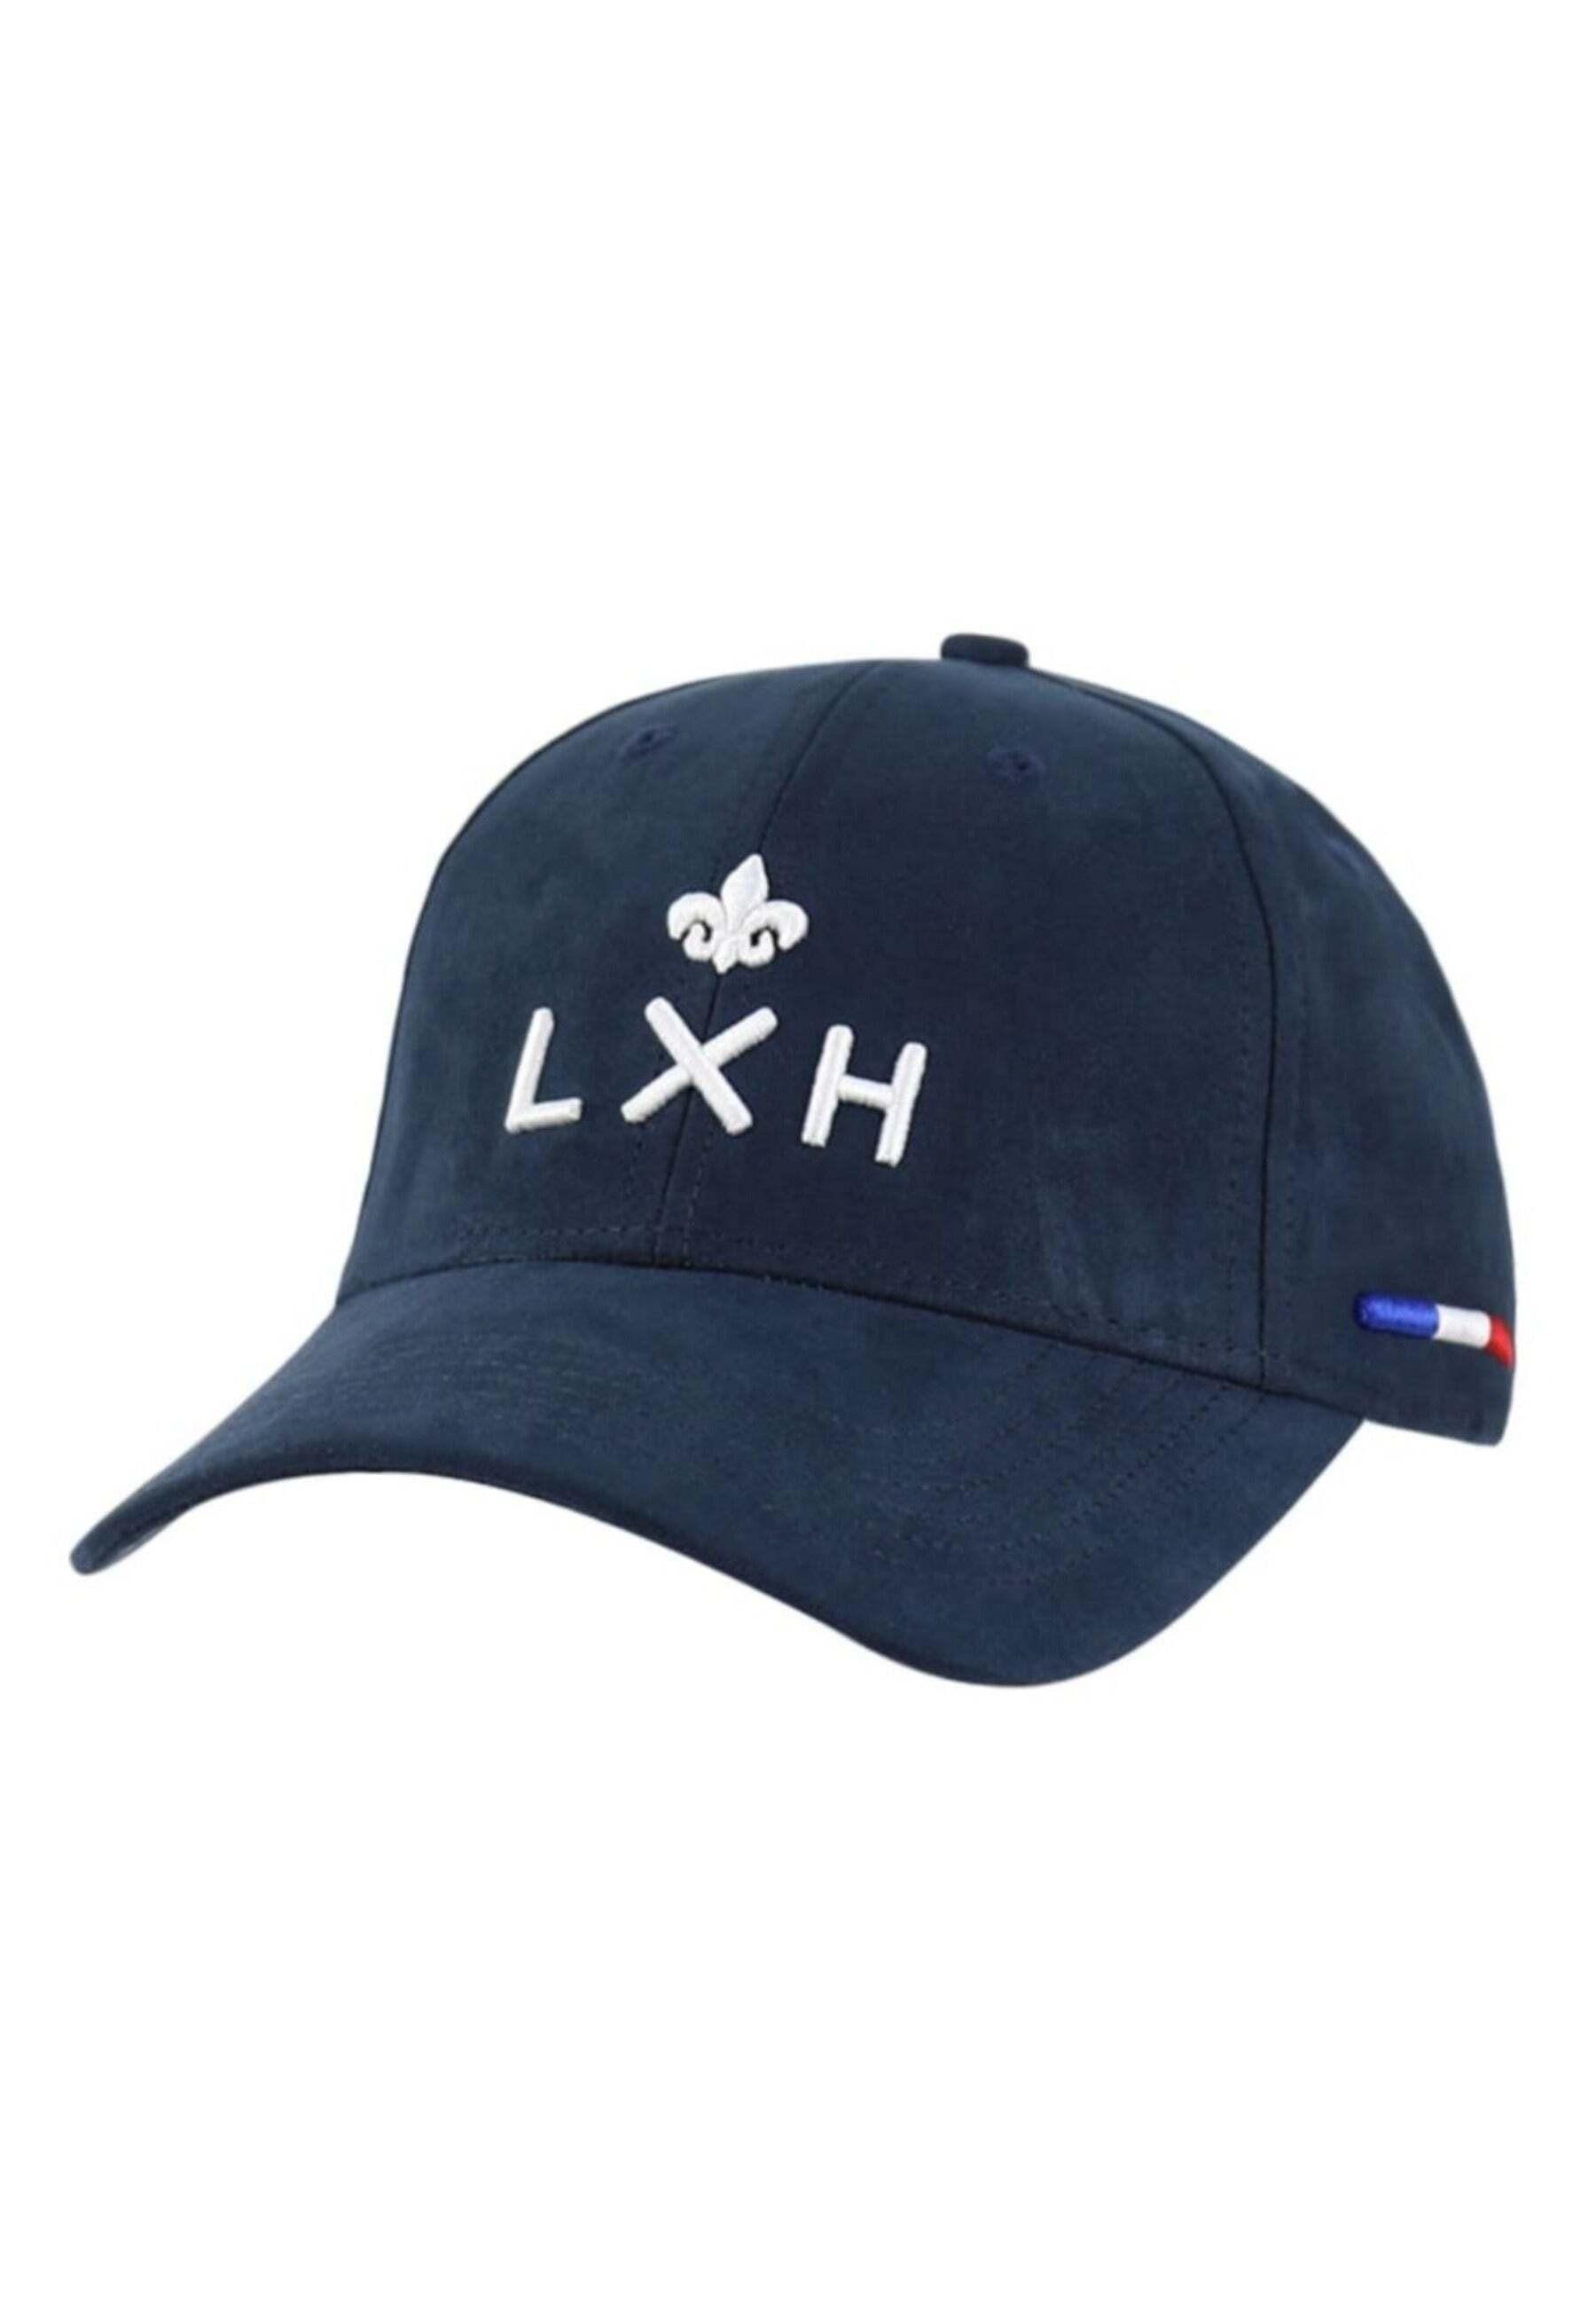 LXH  Caps Casquette Suédine - Genève 